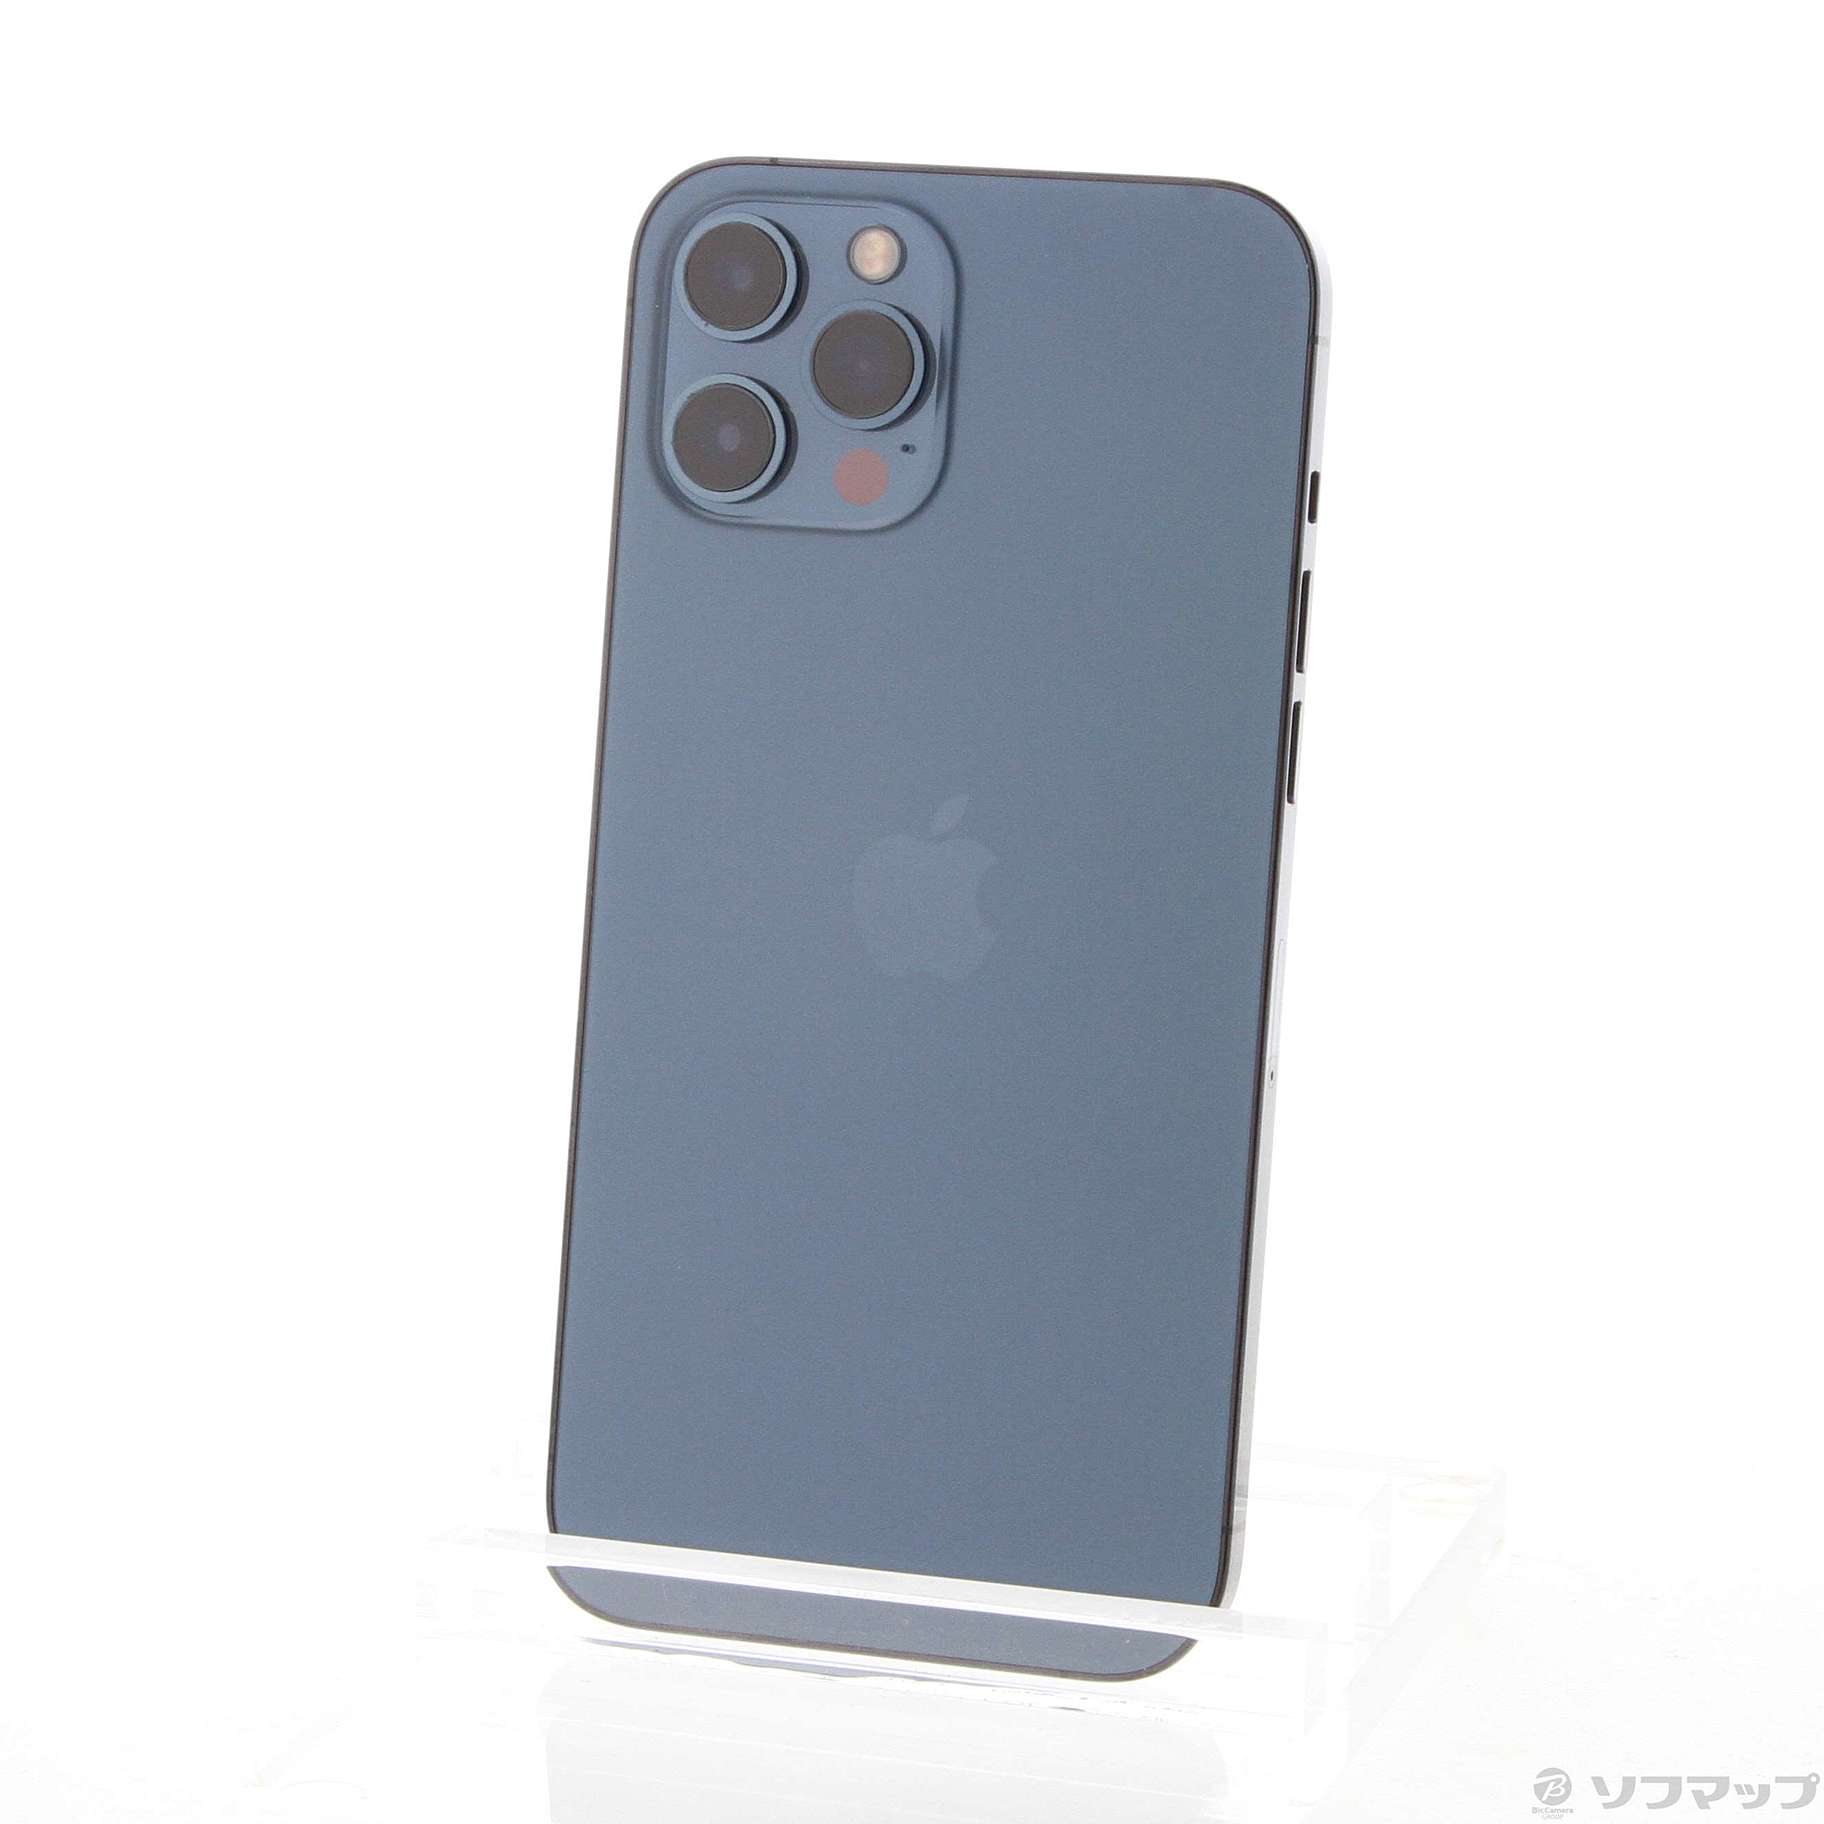 iPhone12 promax 256GB パシフィックブルー simfree